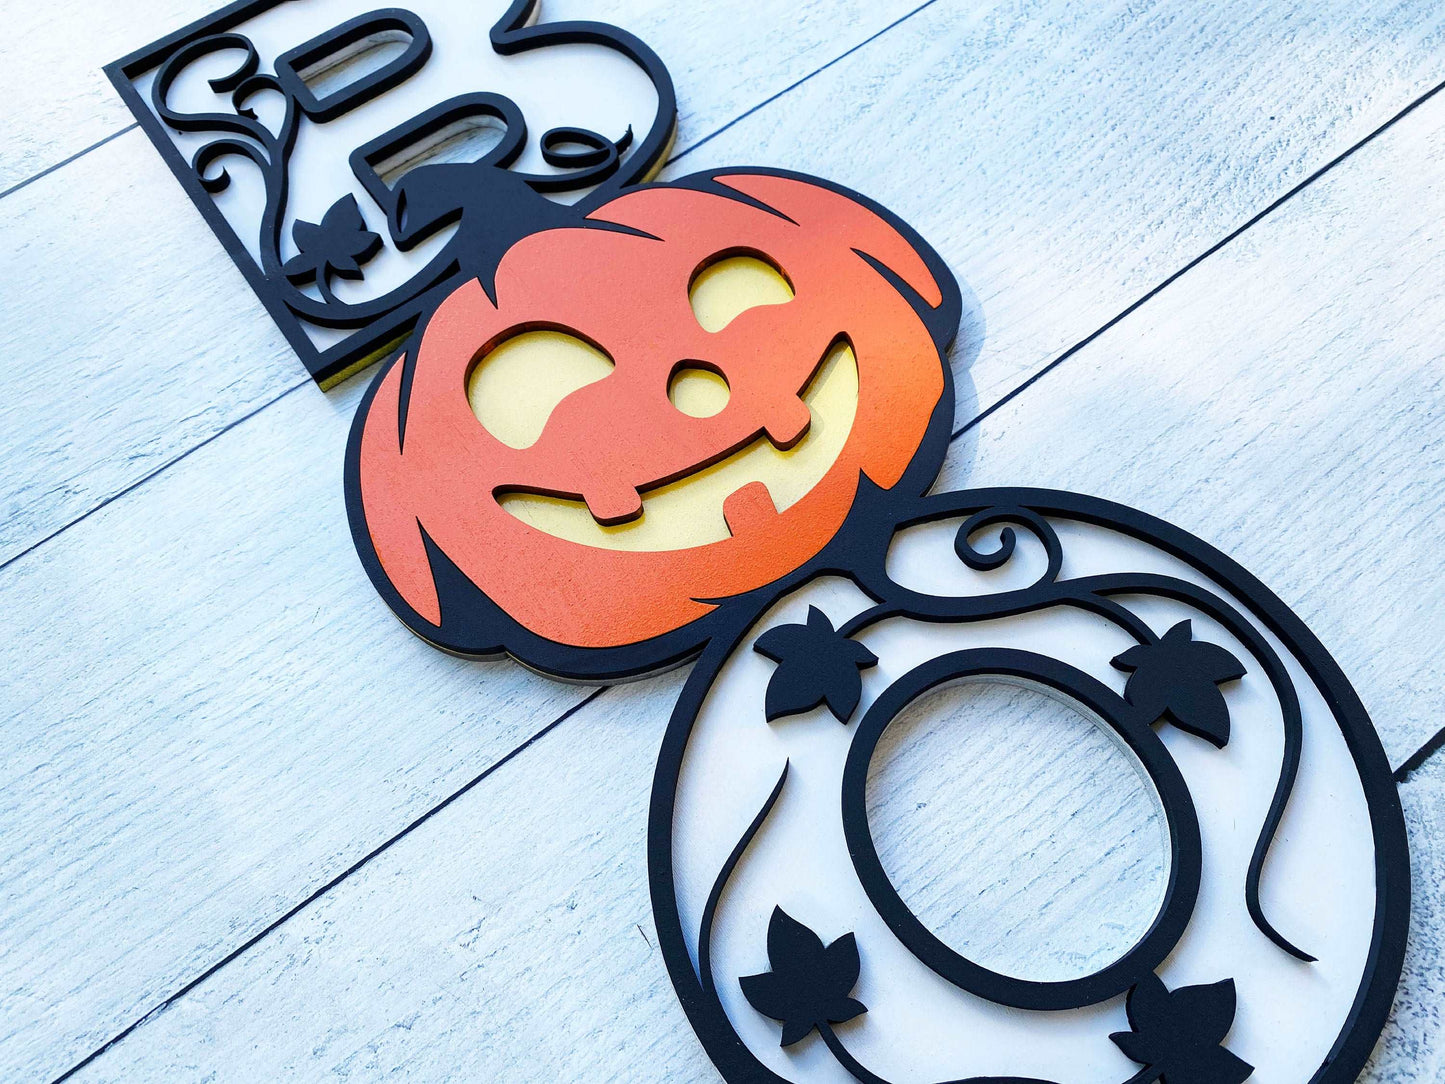 Halloween BOO Sign - Pumpkin